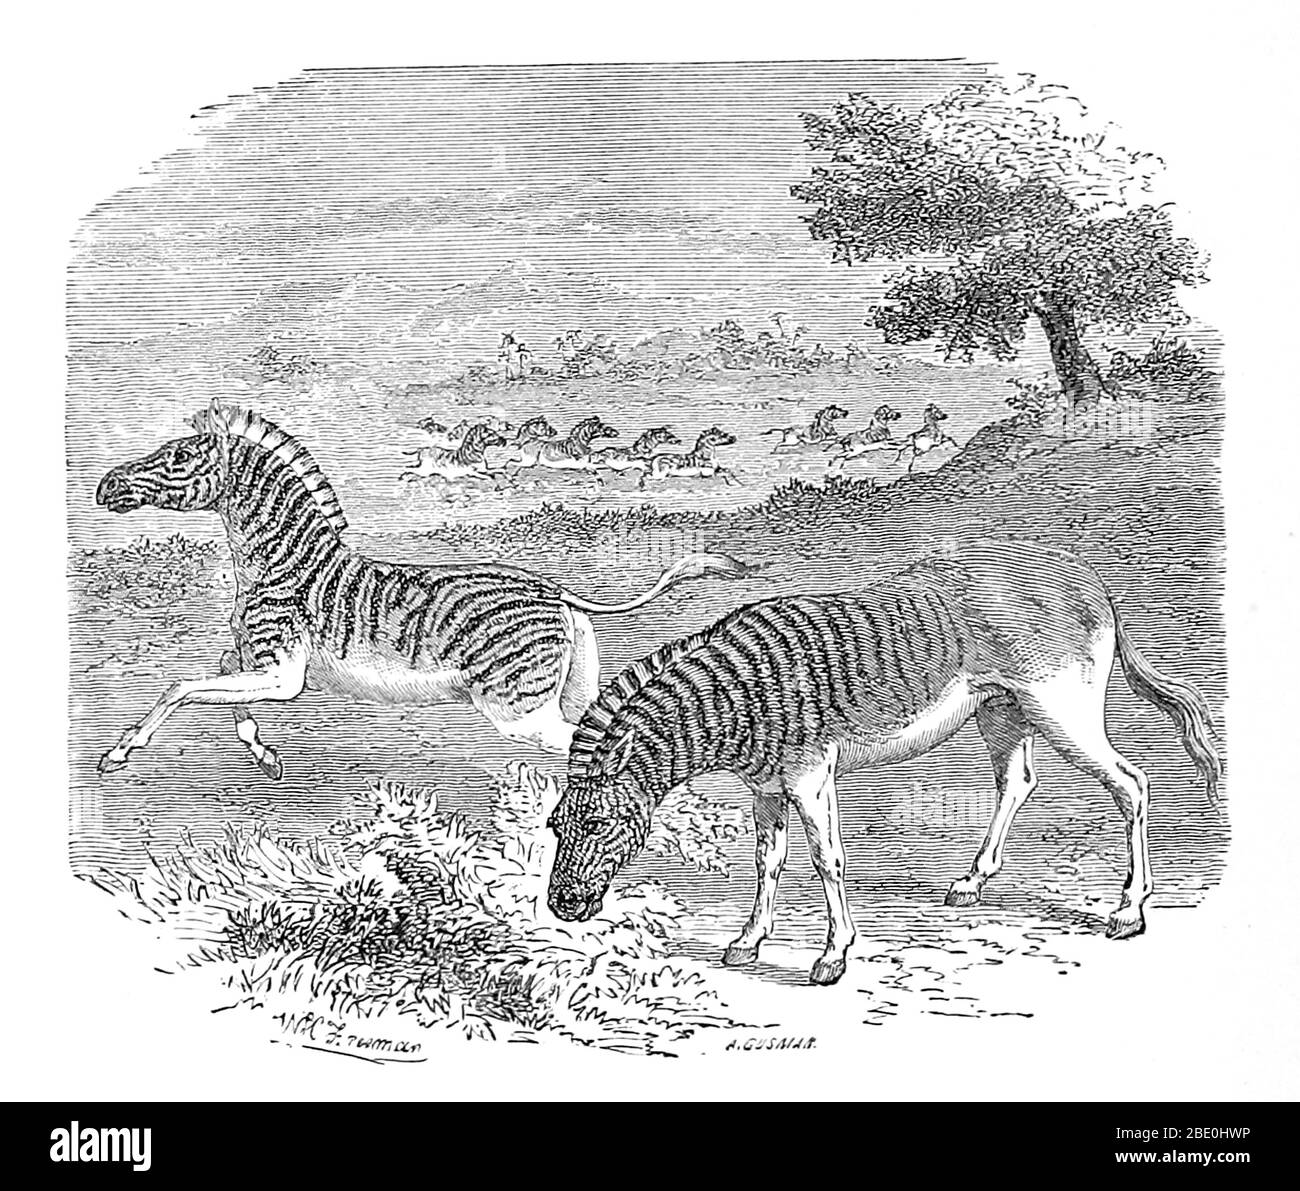 Un'illustrazione di 1869 di una zebra (sinistra) e di un quagga (destra). Quagga (Equus quagga quagga) è una sottospecie estinta della zebra pianeggiante che visse in Sudafrica fino al XIX secolo. Si pensava da tempo che fosse una specie distinta, ma gli studi genetici hanno dimostrato che era la sottospecie più meridionale della zebra pianeggiante. È considerato particolarmente vicino alla zebra di Burchell. Il suo nome deriva dalla sua chiamata, che suona come 'kwa-ha-ha'. L'ultimo esemplare prigioniero morì ad Amsterdam il 12 agosto 1883. Nel 1984, il quagga fu il primo animale estinto ad avere analizzato il suo DNA, e il Foto Stock